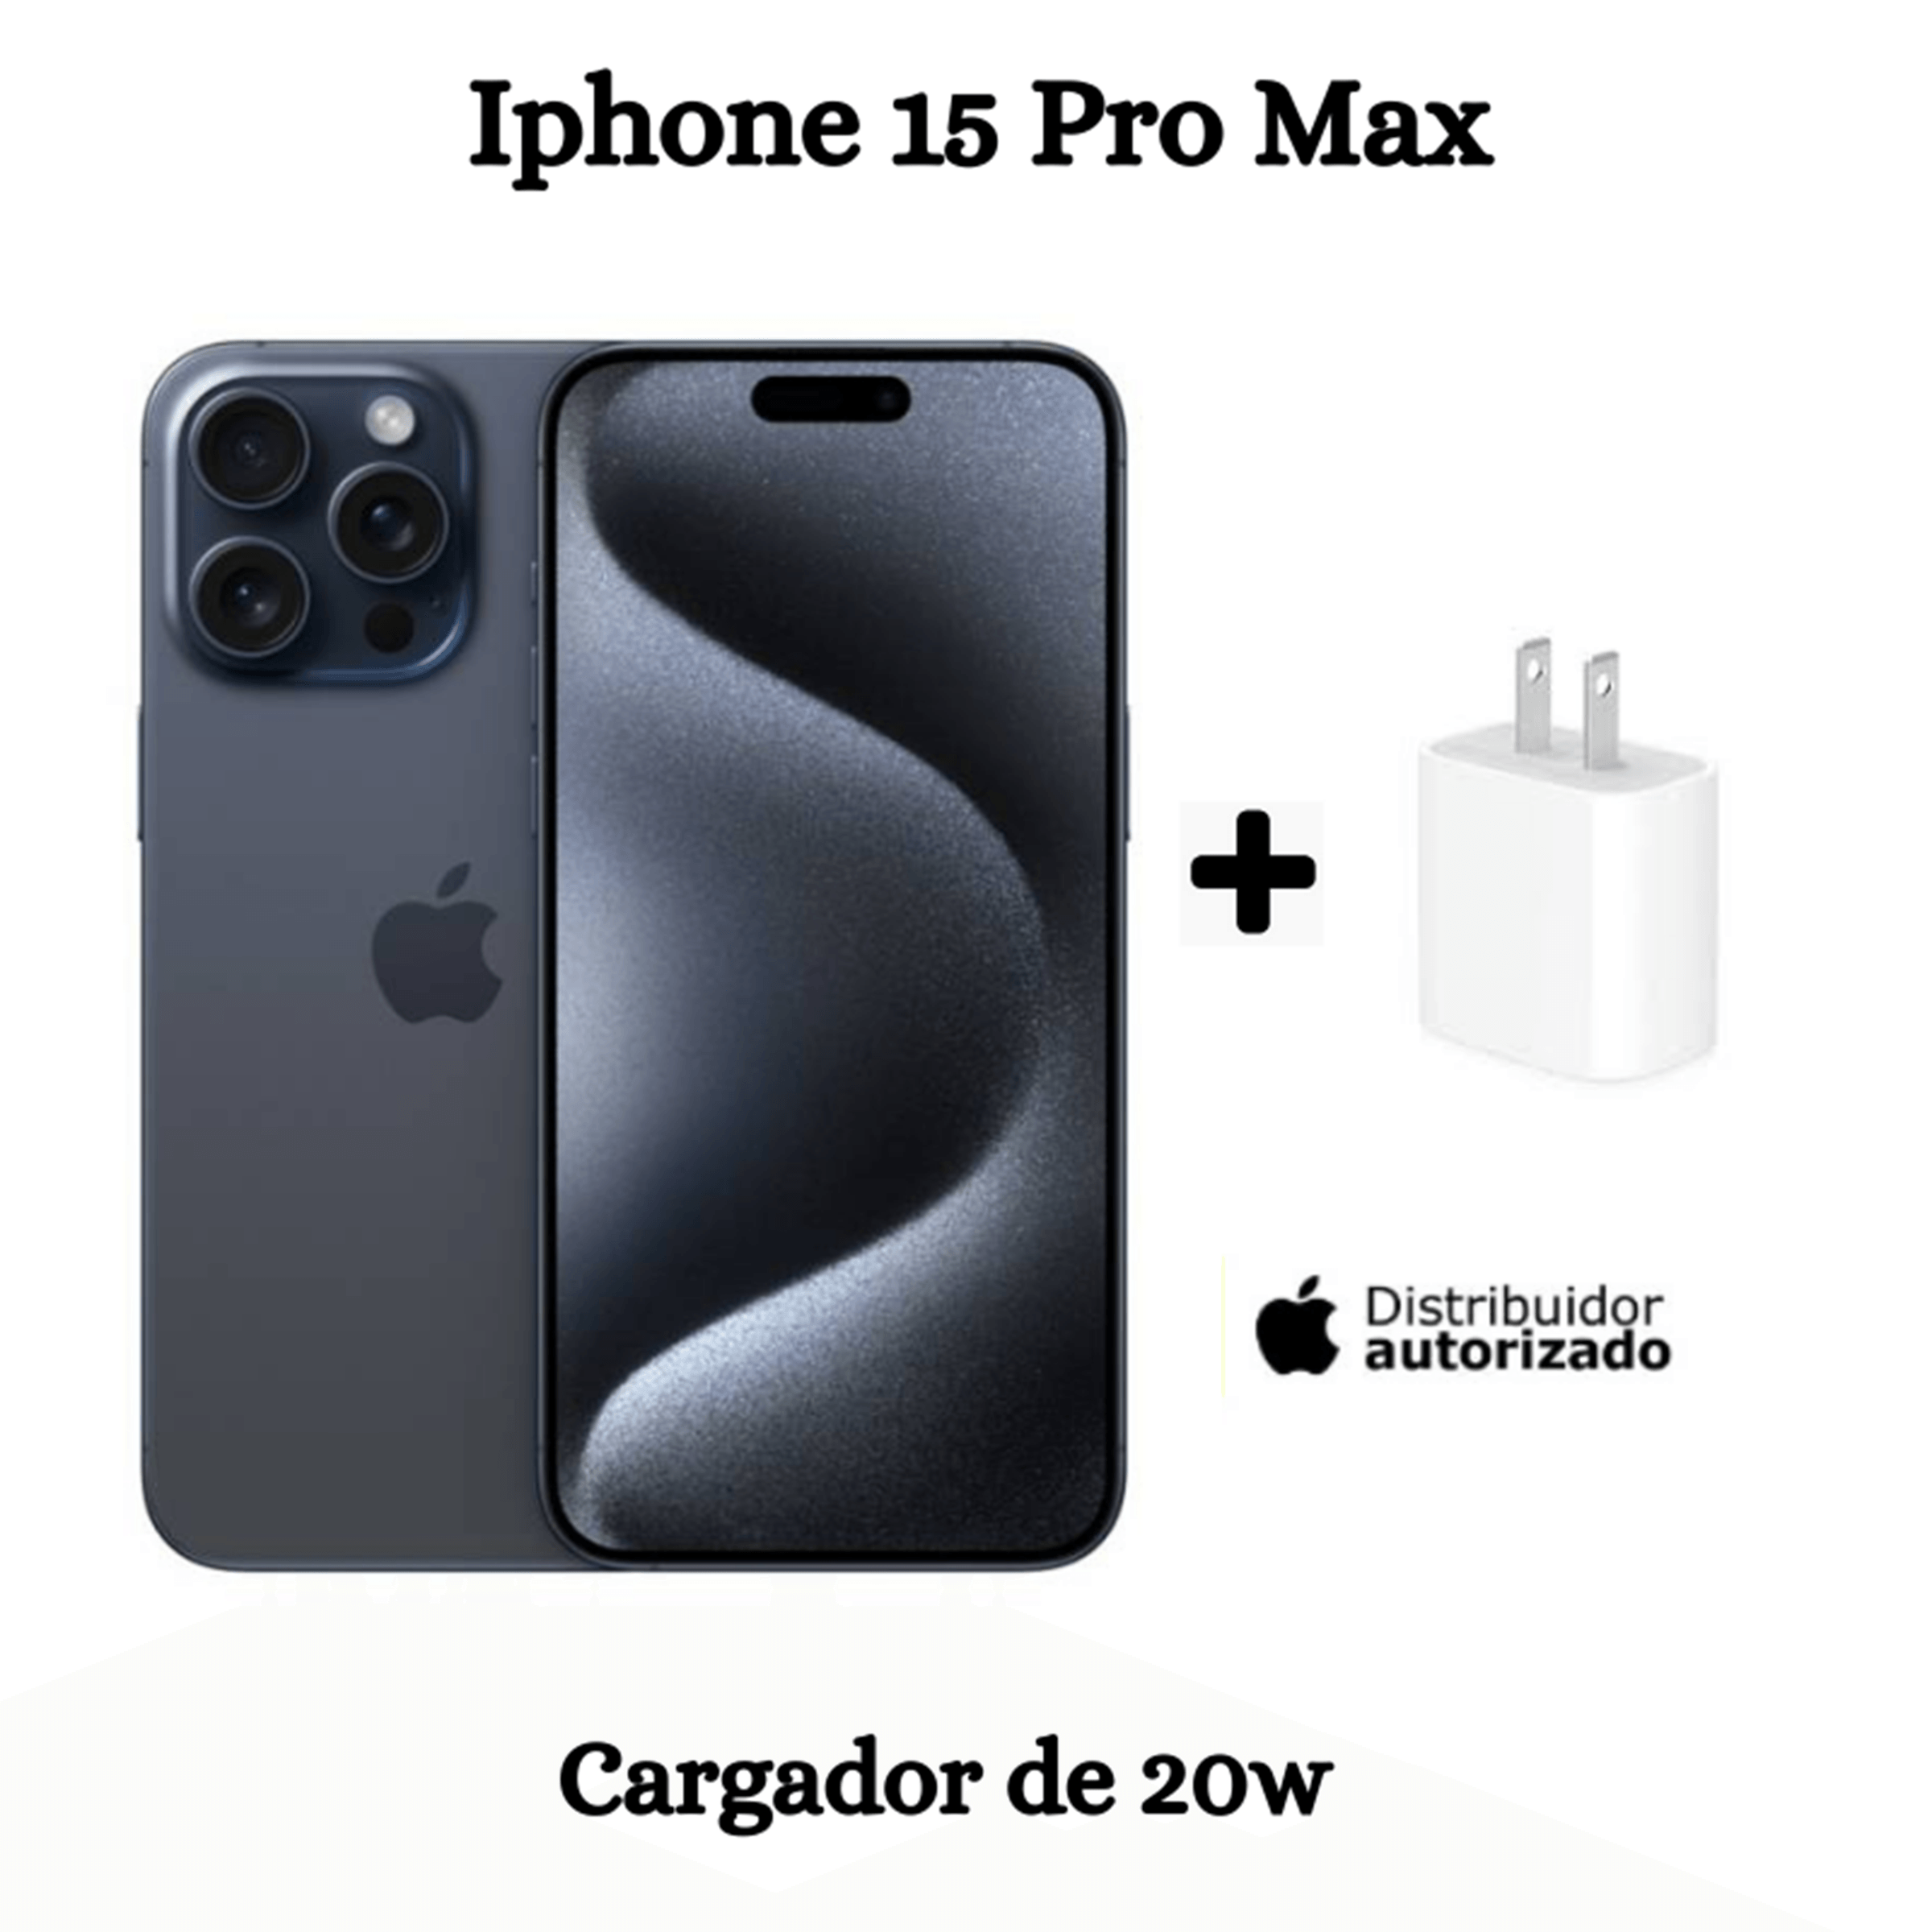 iPhone 15 Pro Max 256GB + Cargador - BLUE TITANIUM